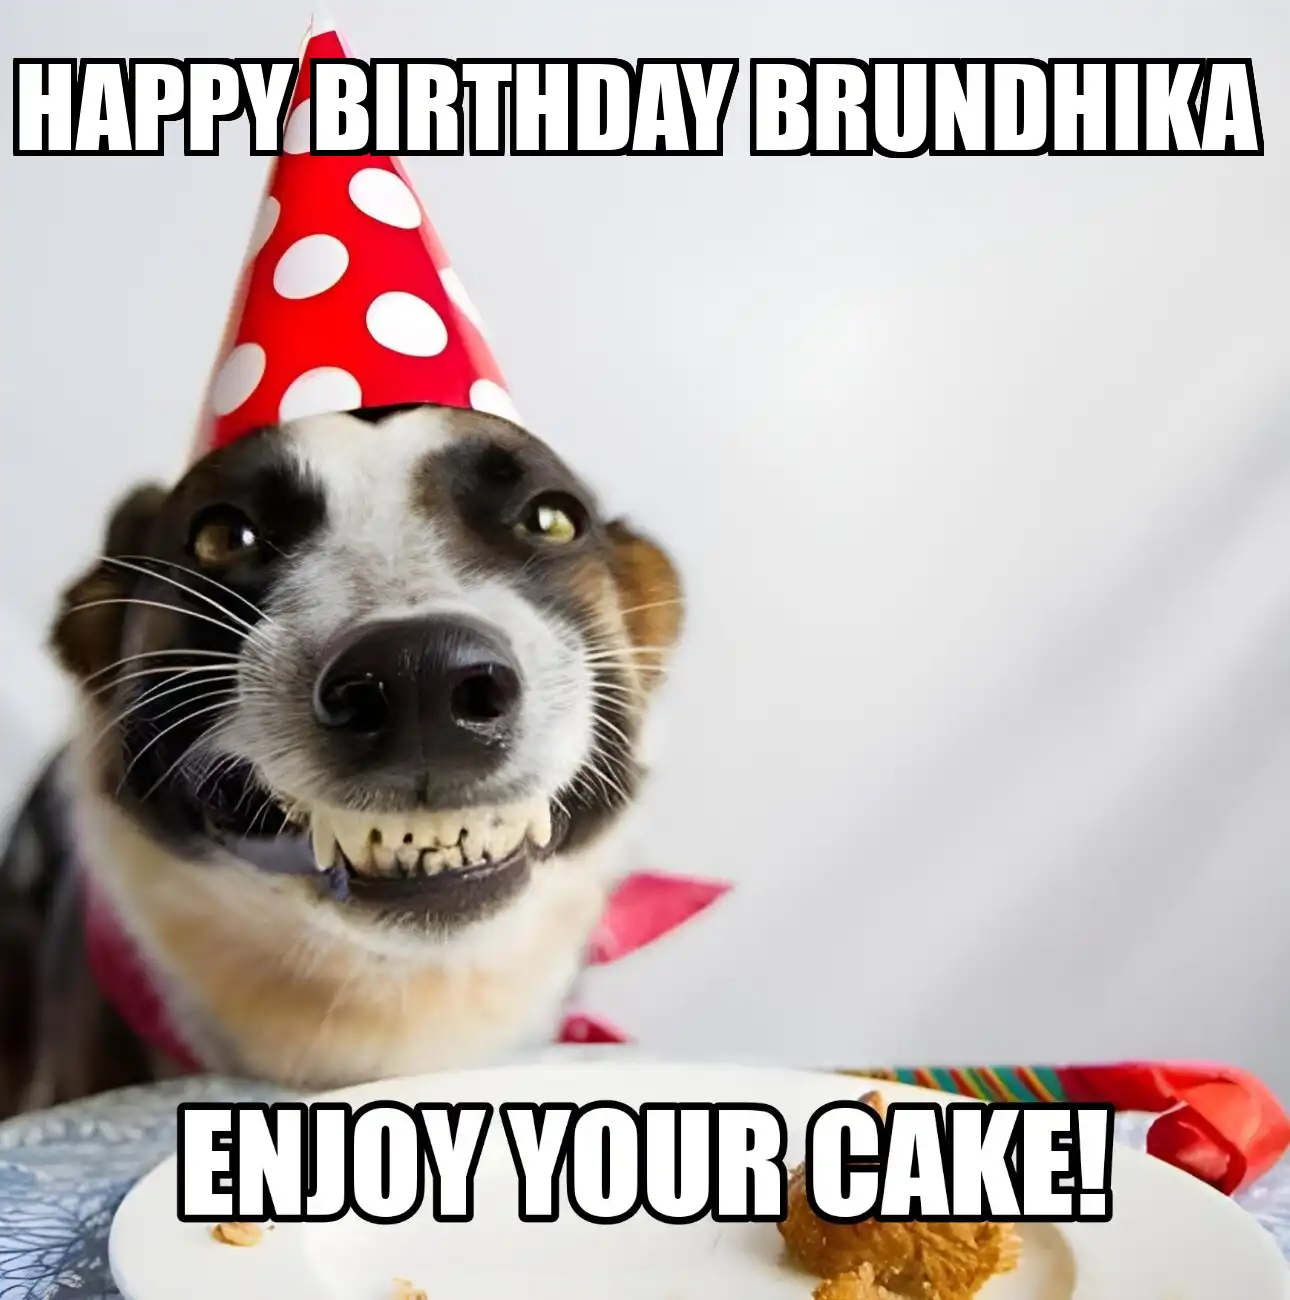 Happy Birthday Brundhika Enjoy Your Cake Dog Meme